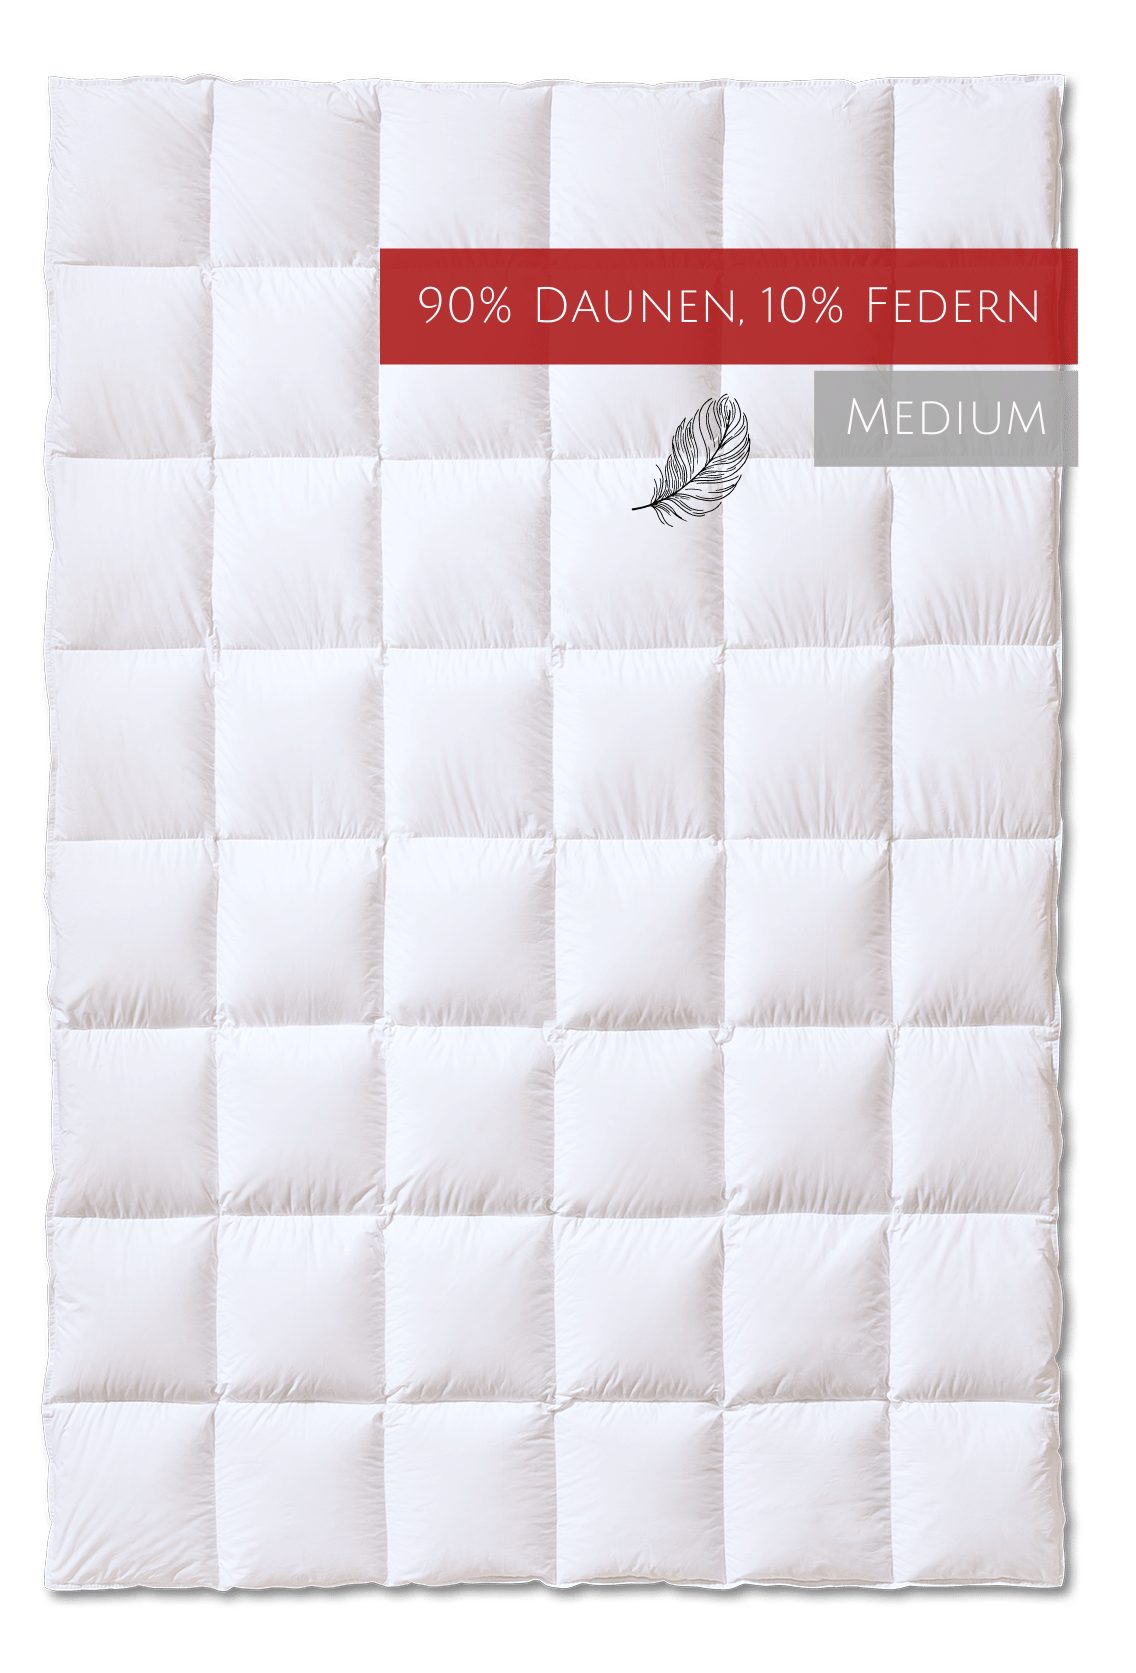 Daunenbettdecke, Classic Wärmestufe "medium", Kauffmann, Füllung: 90% Daunen, 10% Federn, Bezug: 100% Baumwolle, allergikerfreundlich